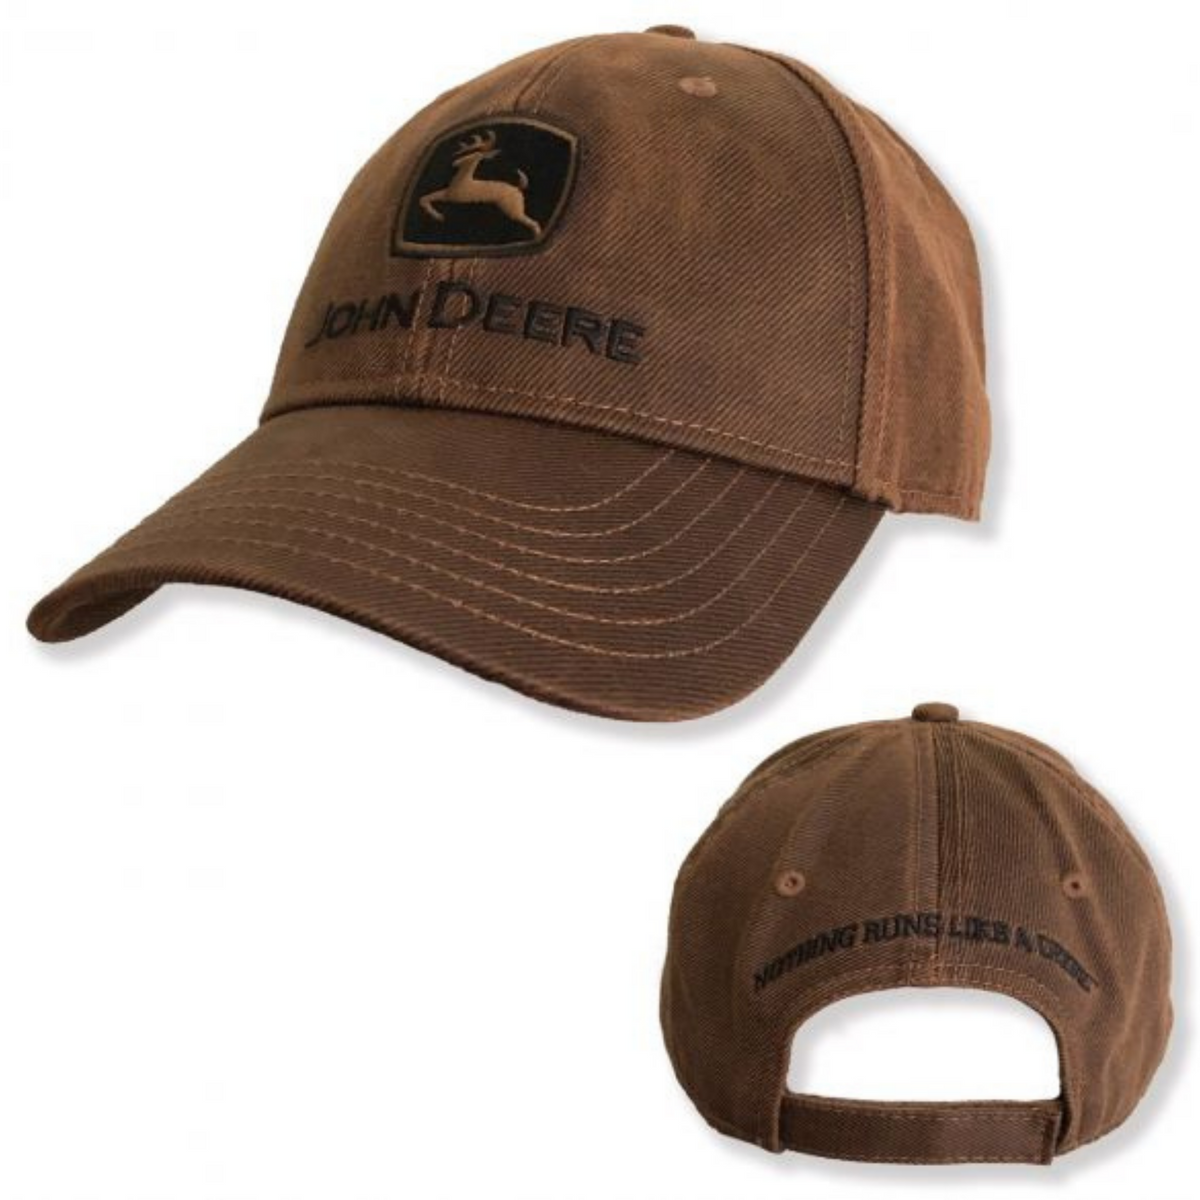 John Deere Nothing Runs Like A Deere Trucker Hat Cap Green Snap Back